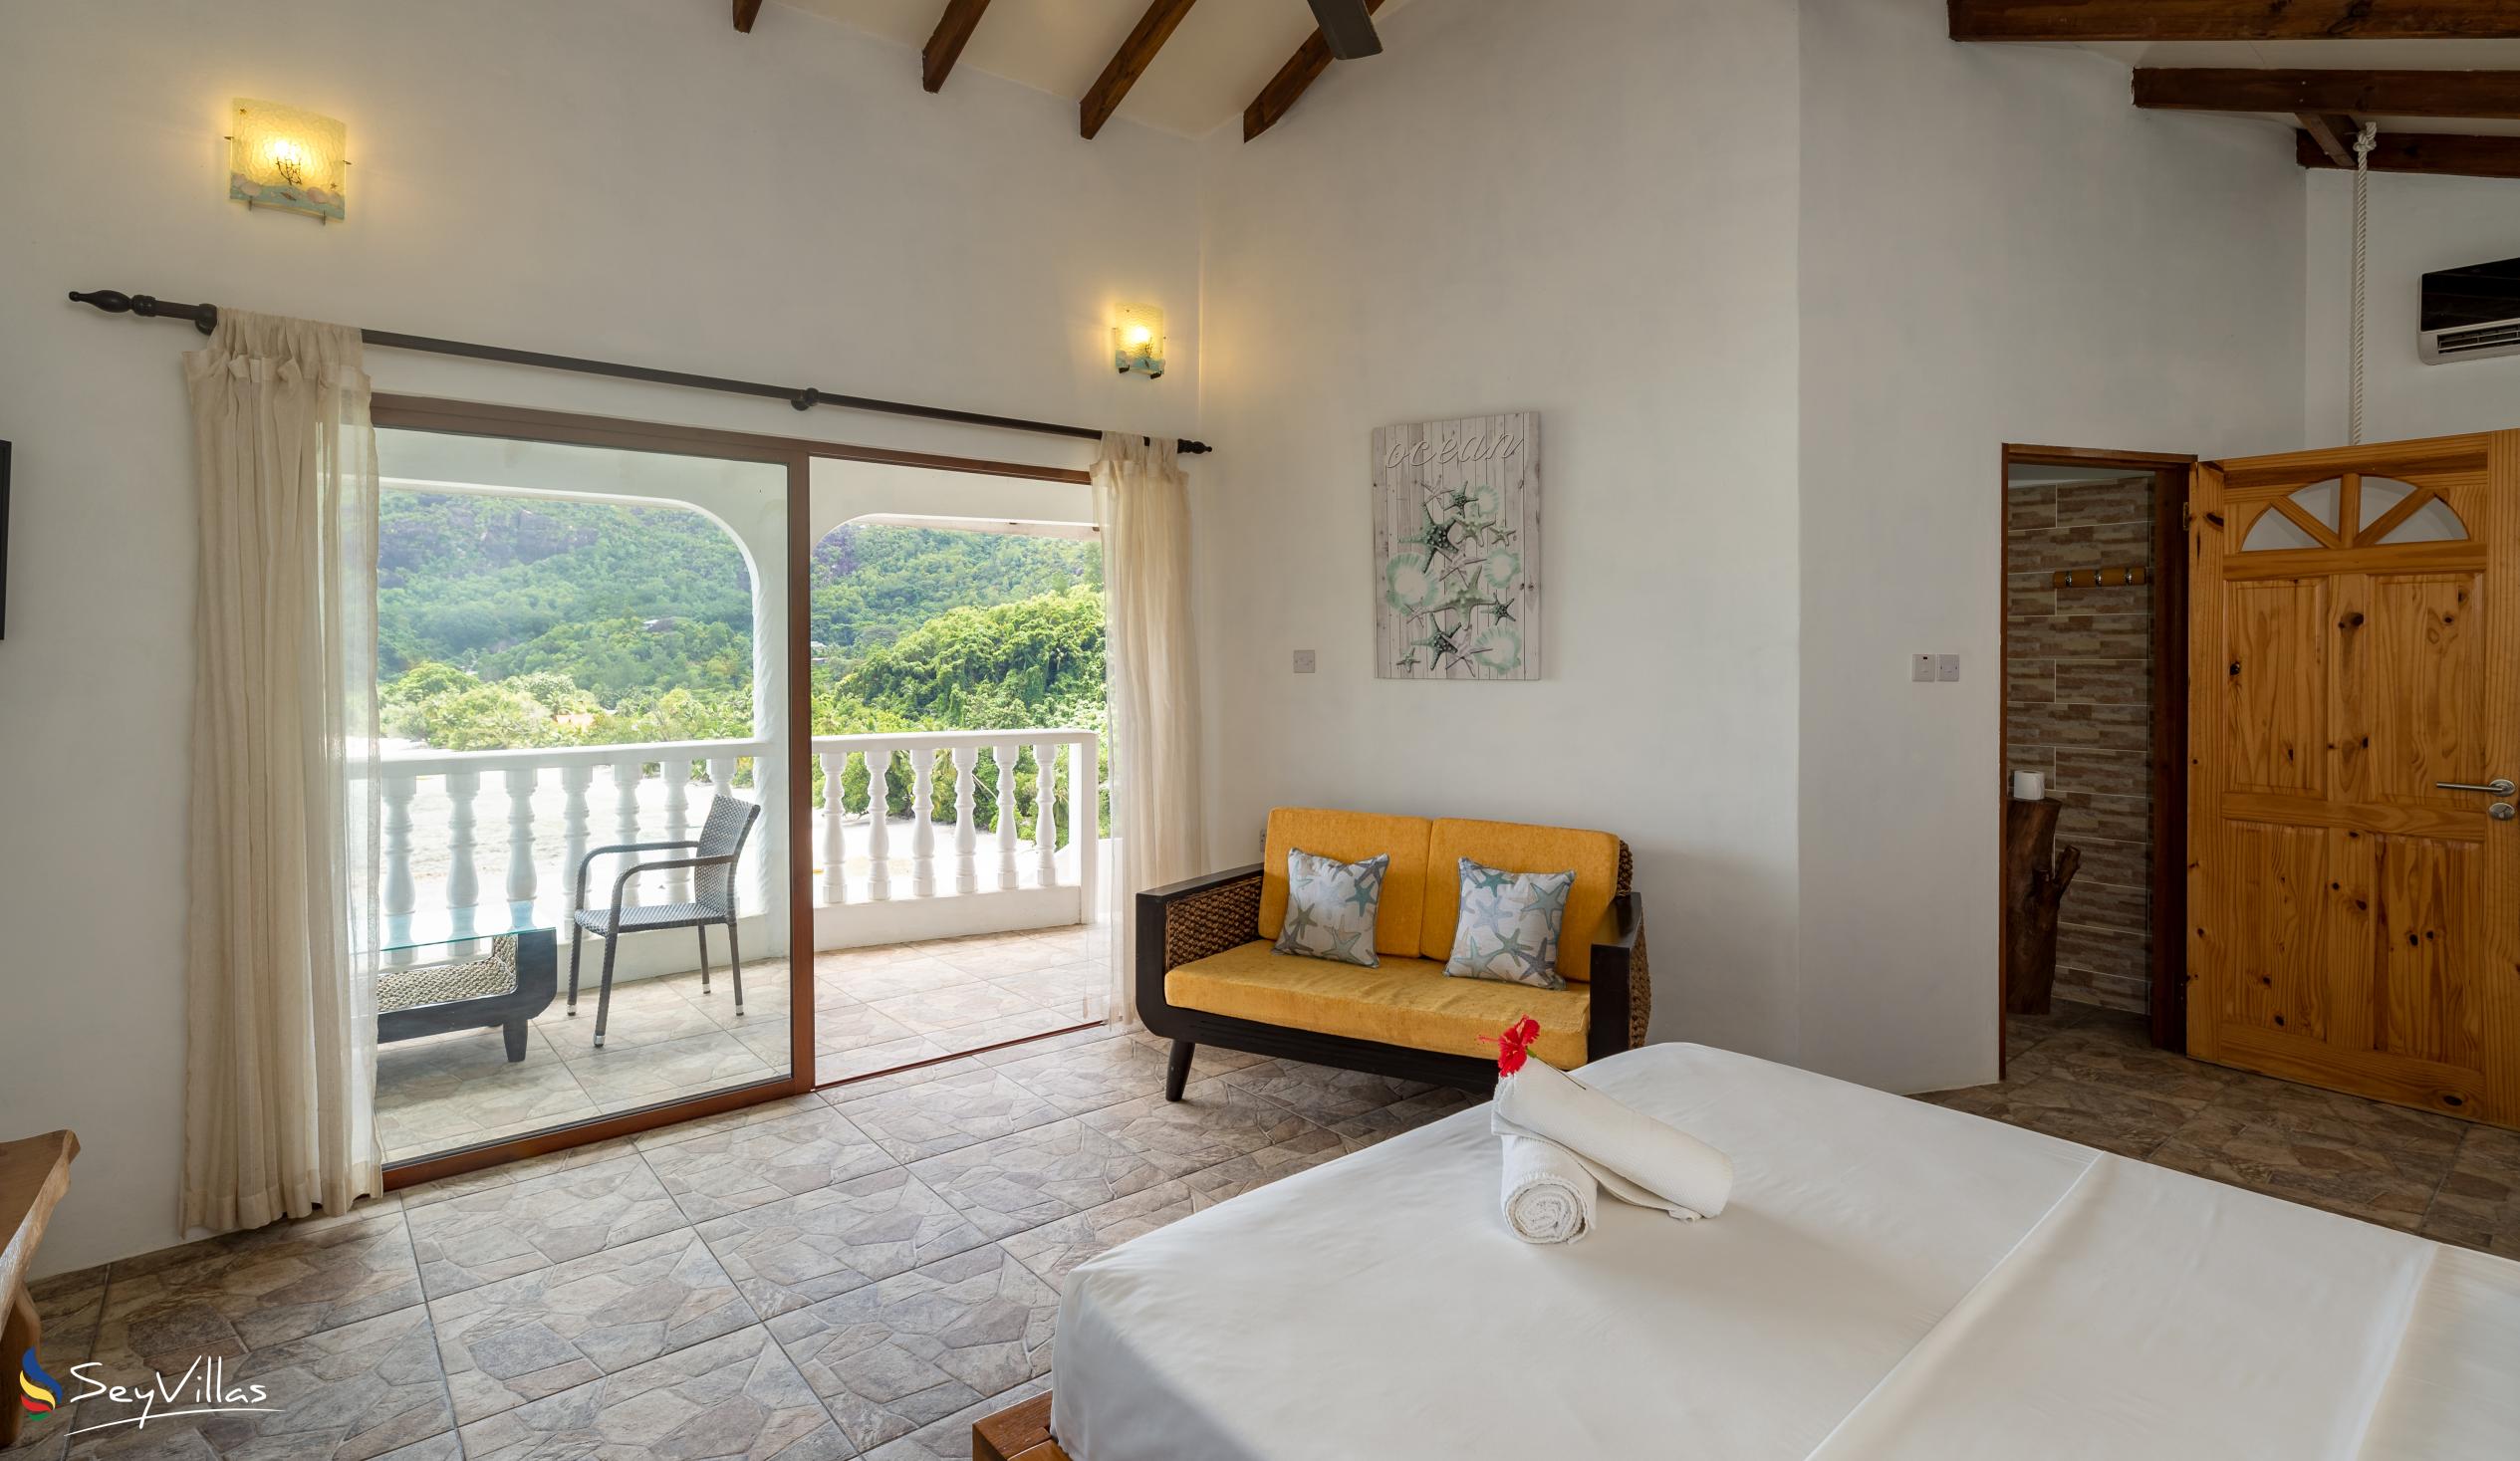 Photo 63: Lazare Picault Hotel - Honeymoon Suite - Mahé (Seychelles)